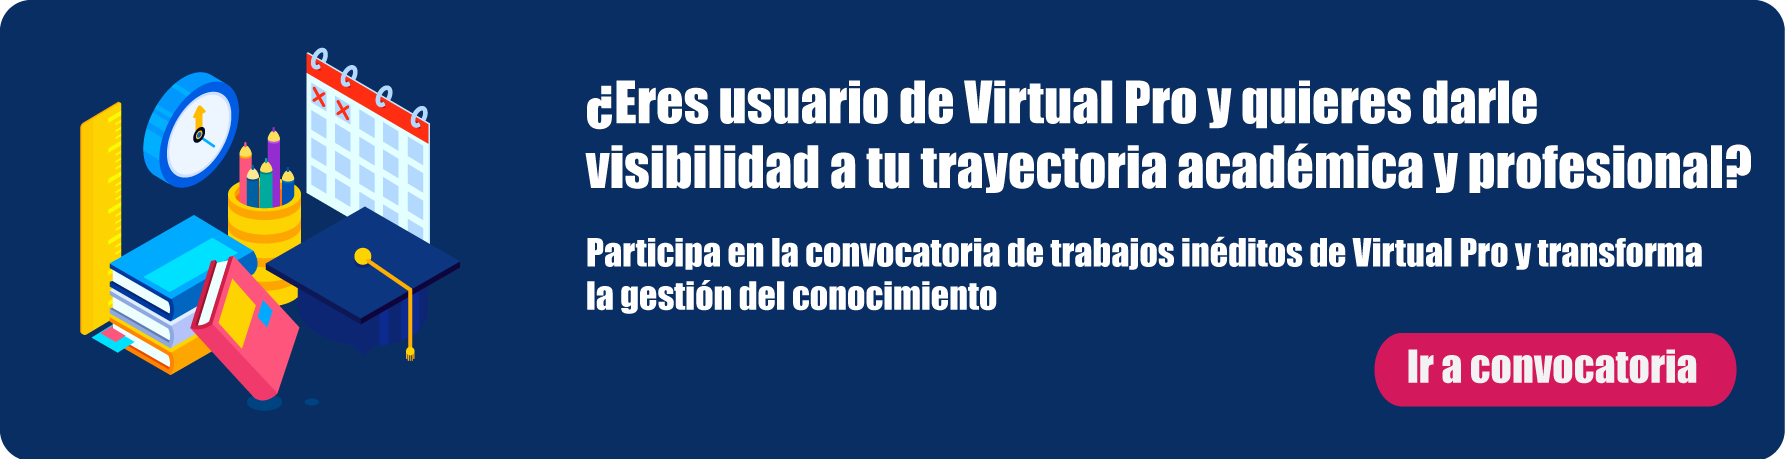 Participa en la convocatoria de trabajos inéditos en Virtual Pro